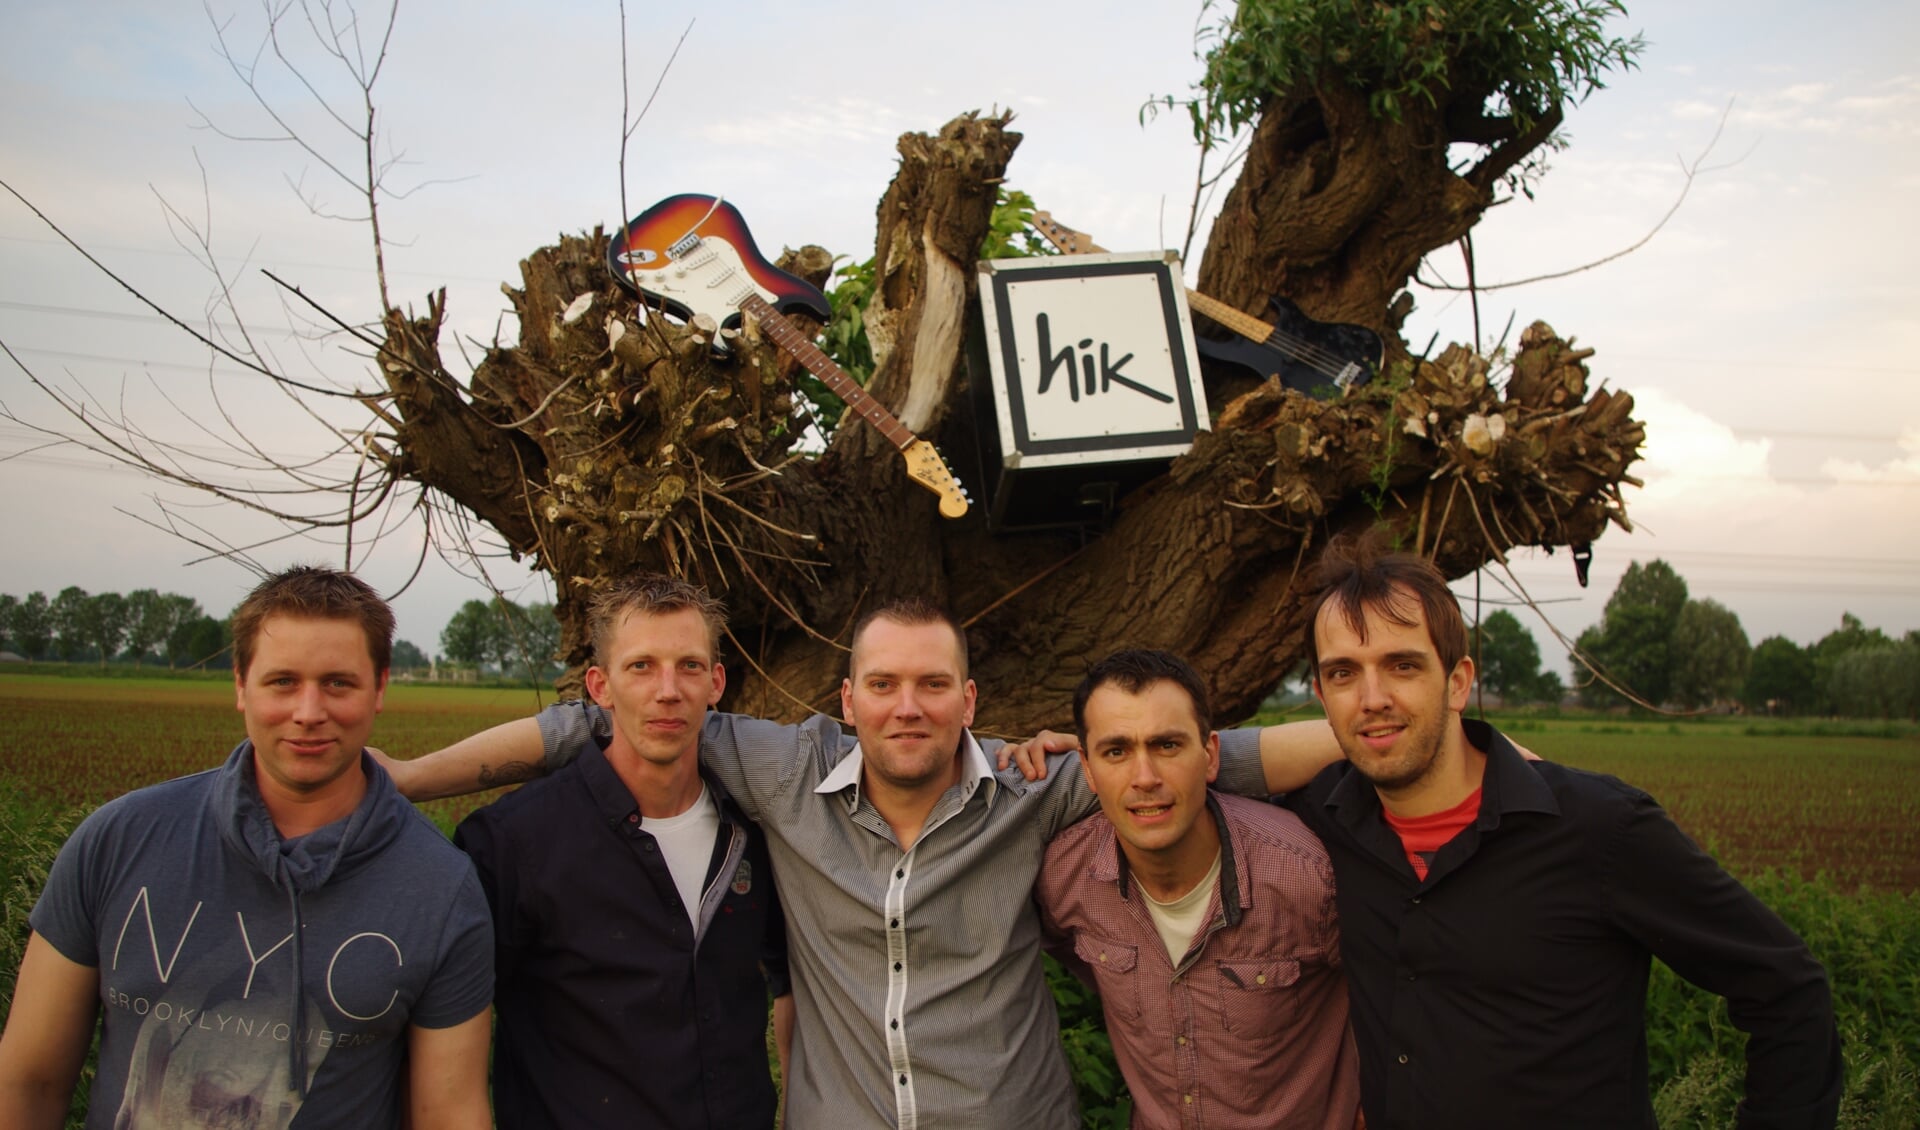 De band HIK uit Hummelo treedt op in de regio. Foto: PR